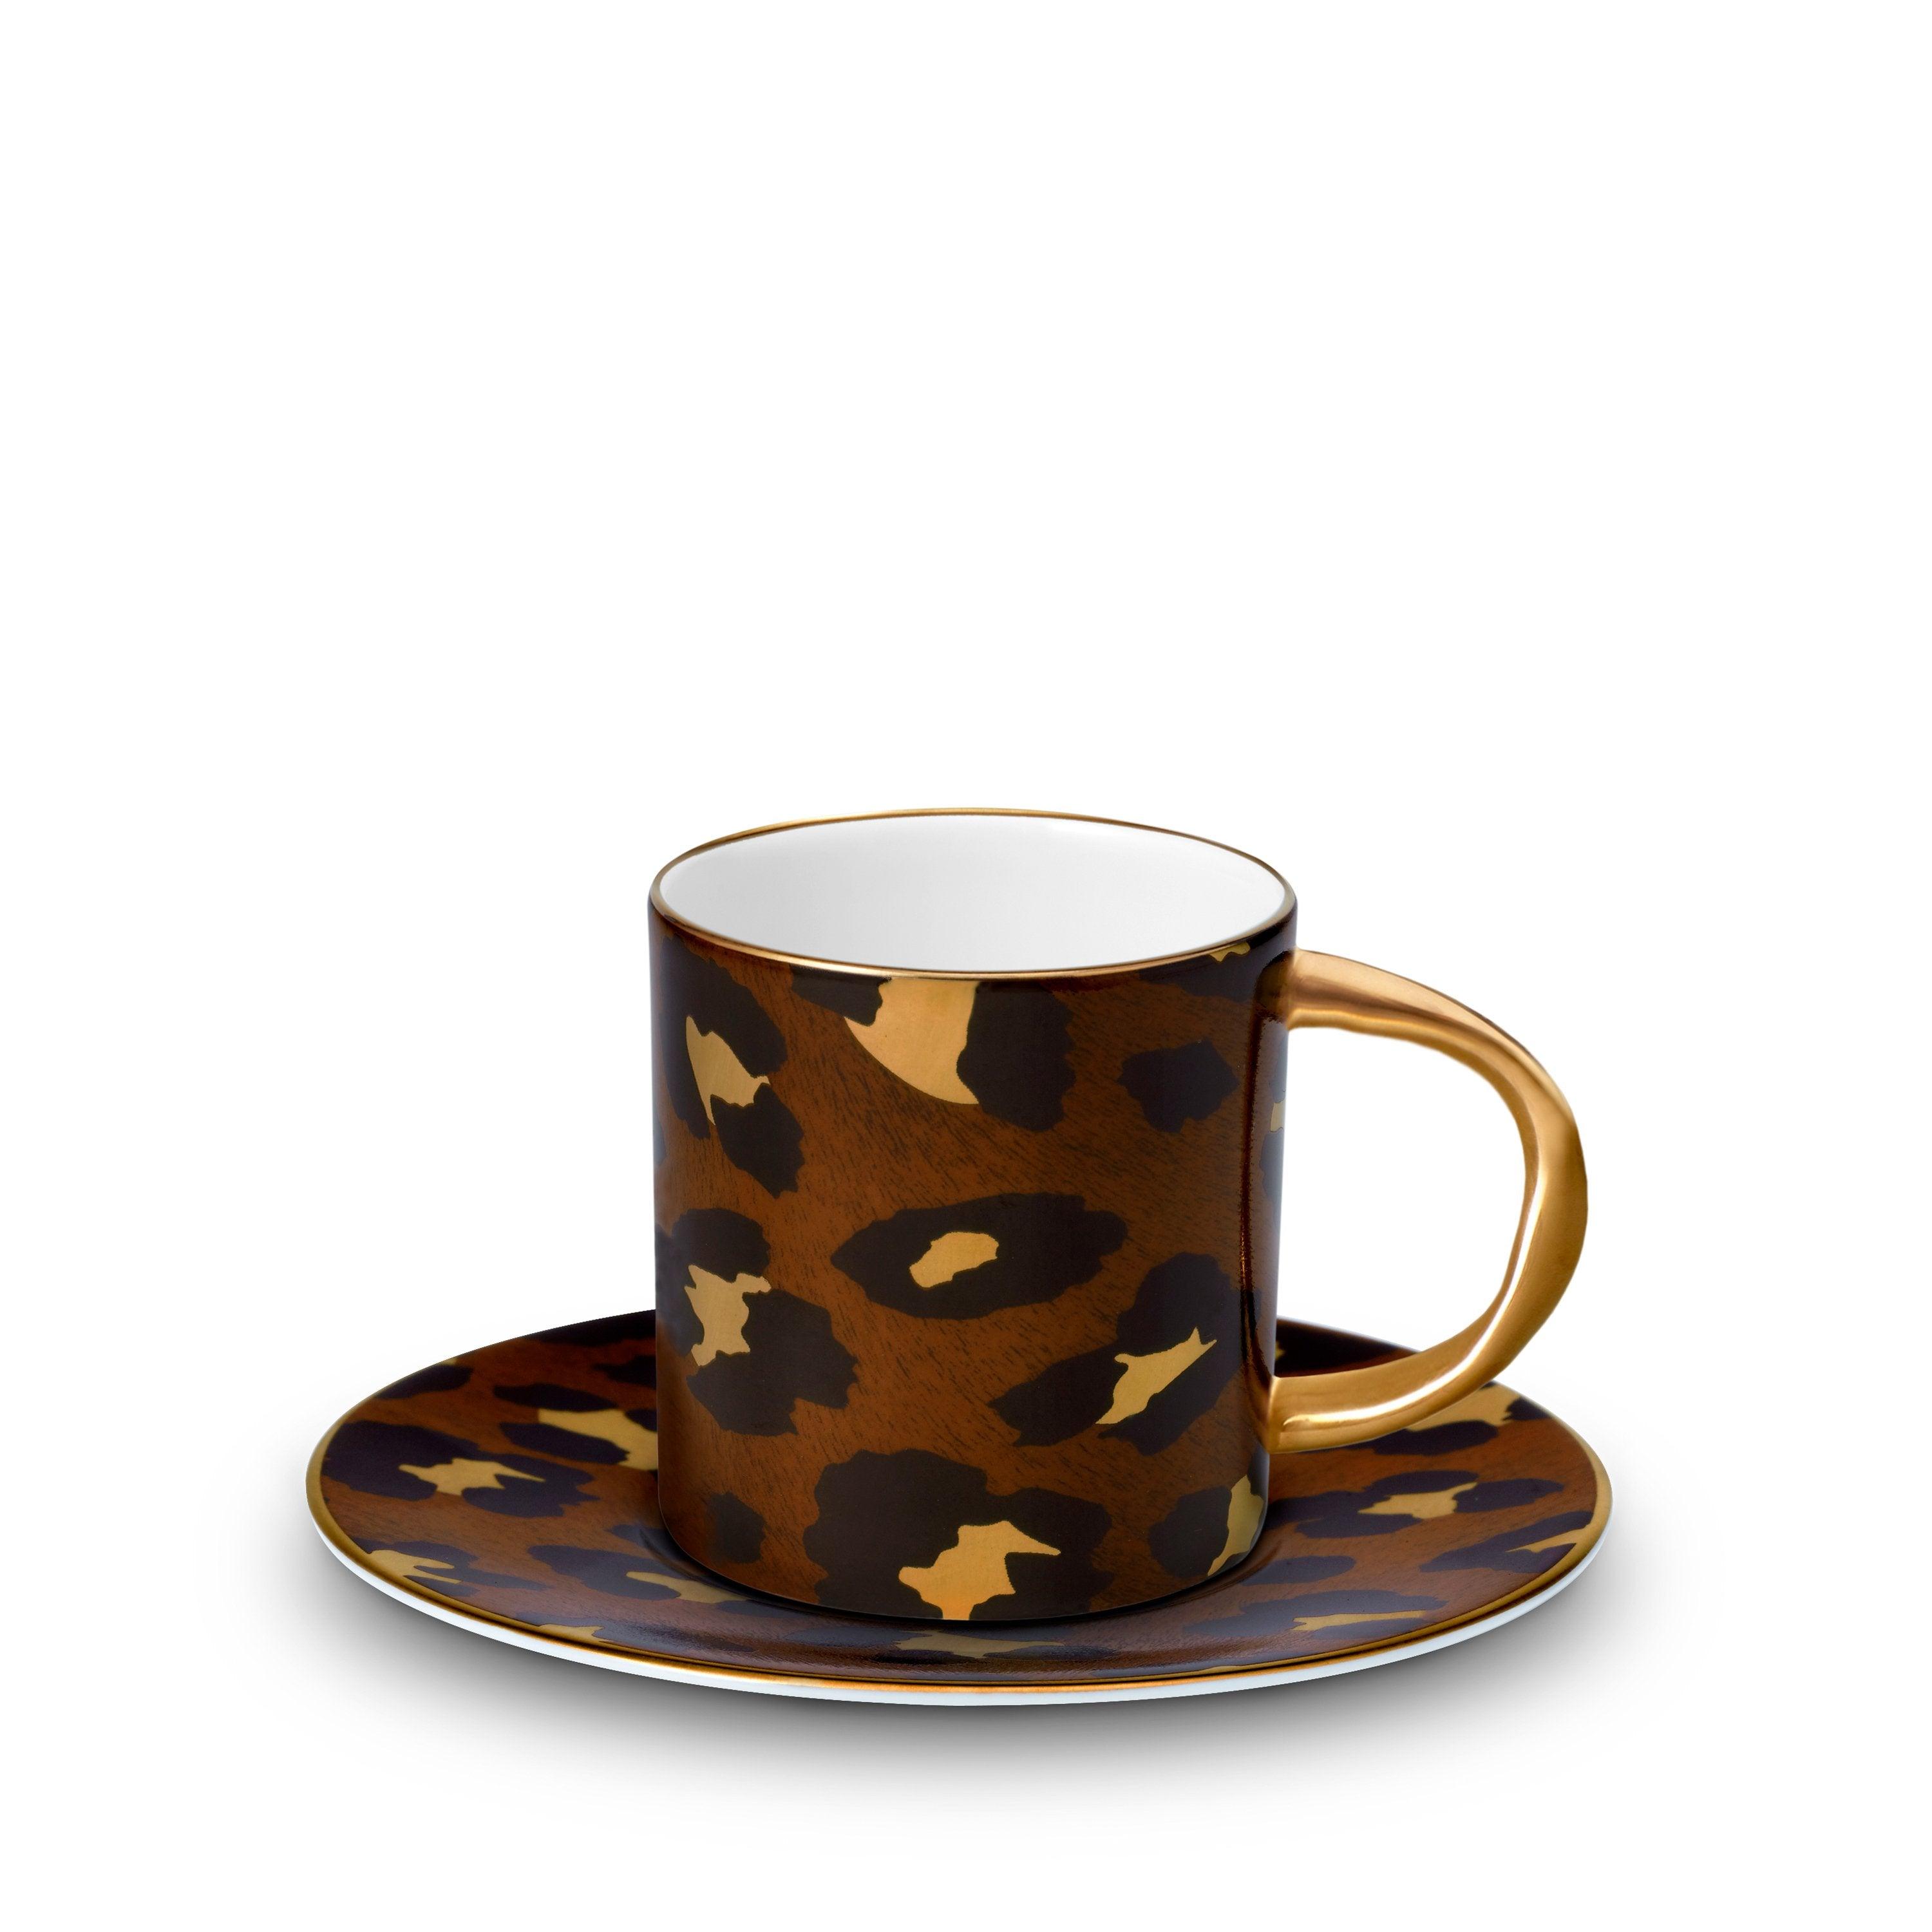 http://www.l-objet.com/cdn/shop/files/leopard-espresso-cup-saucer-l-objet.jpg?v=1692012512